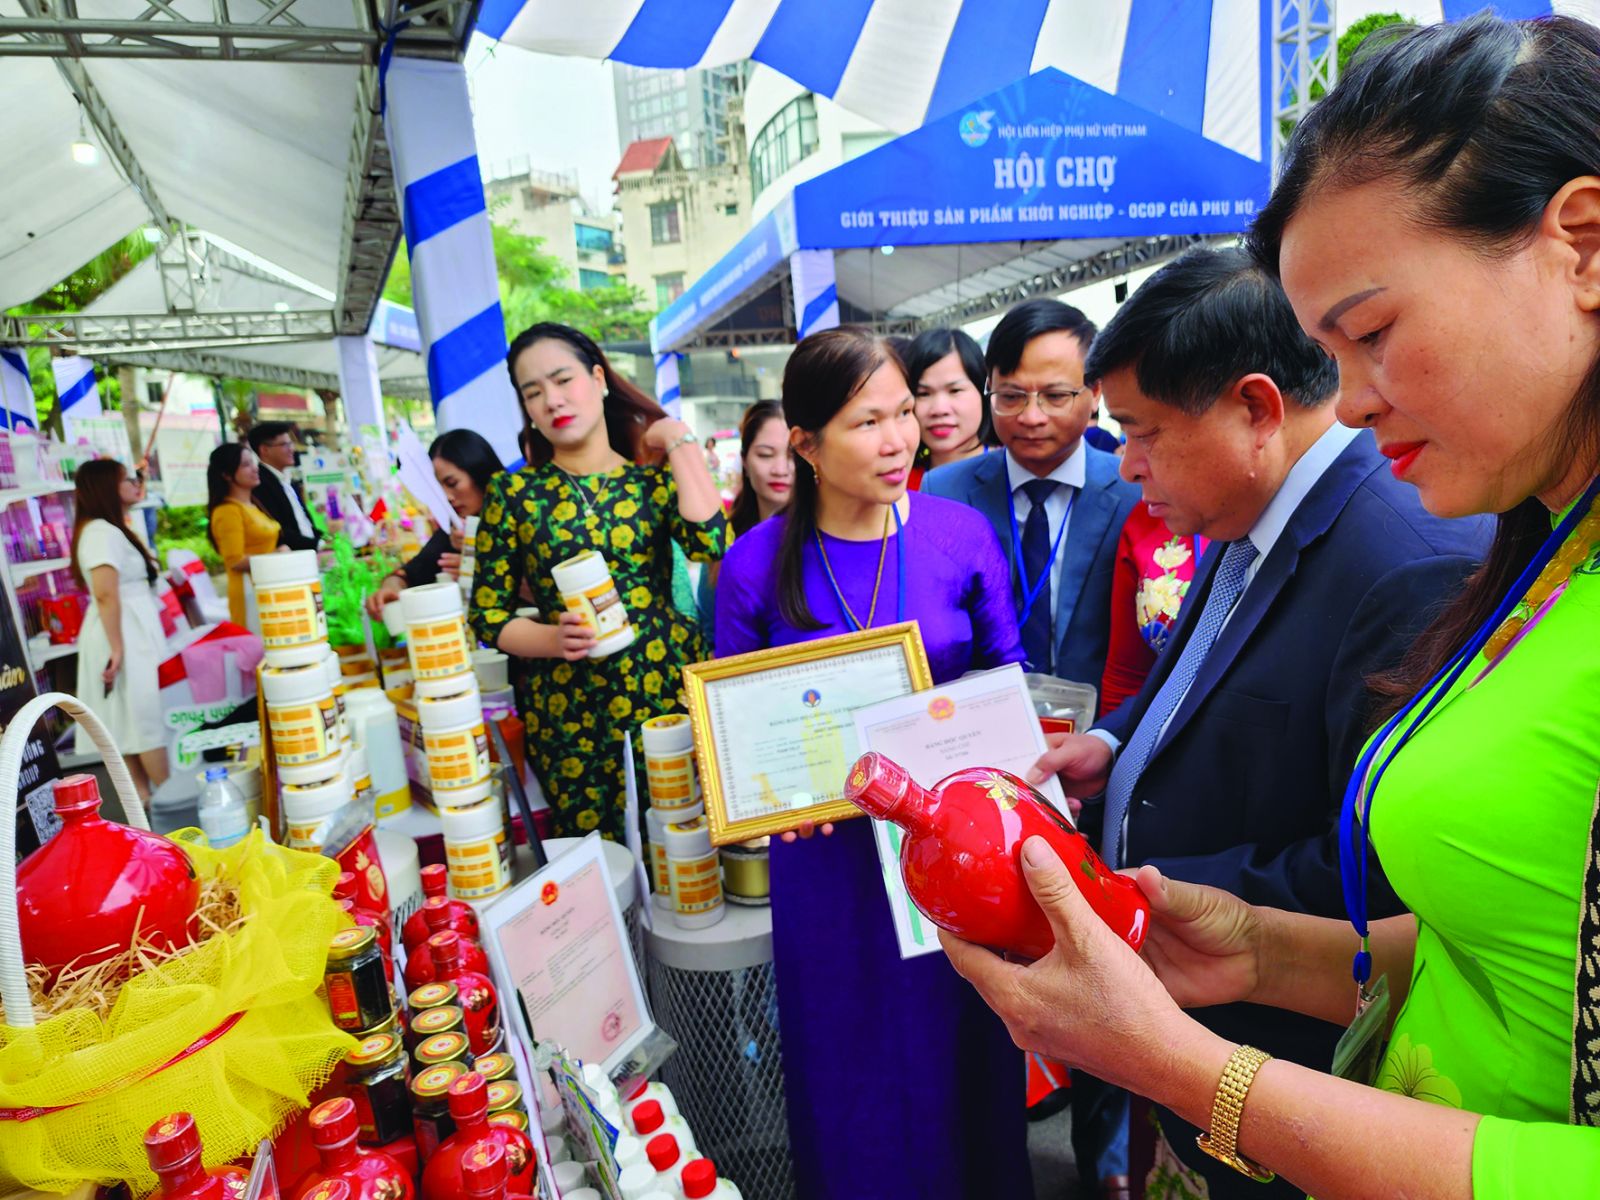  Bộ trưởng Bộ Kế hoạch và Đầu tư Nguyễn Chí Dũng tham quan gian hàng và động viên phụ nữ khởi nghiệp tại Hội chợ giới thiệu sản phẩm khởi nghiệp, OCOP của phụ nữ ở Hà Nội.